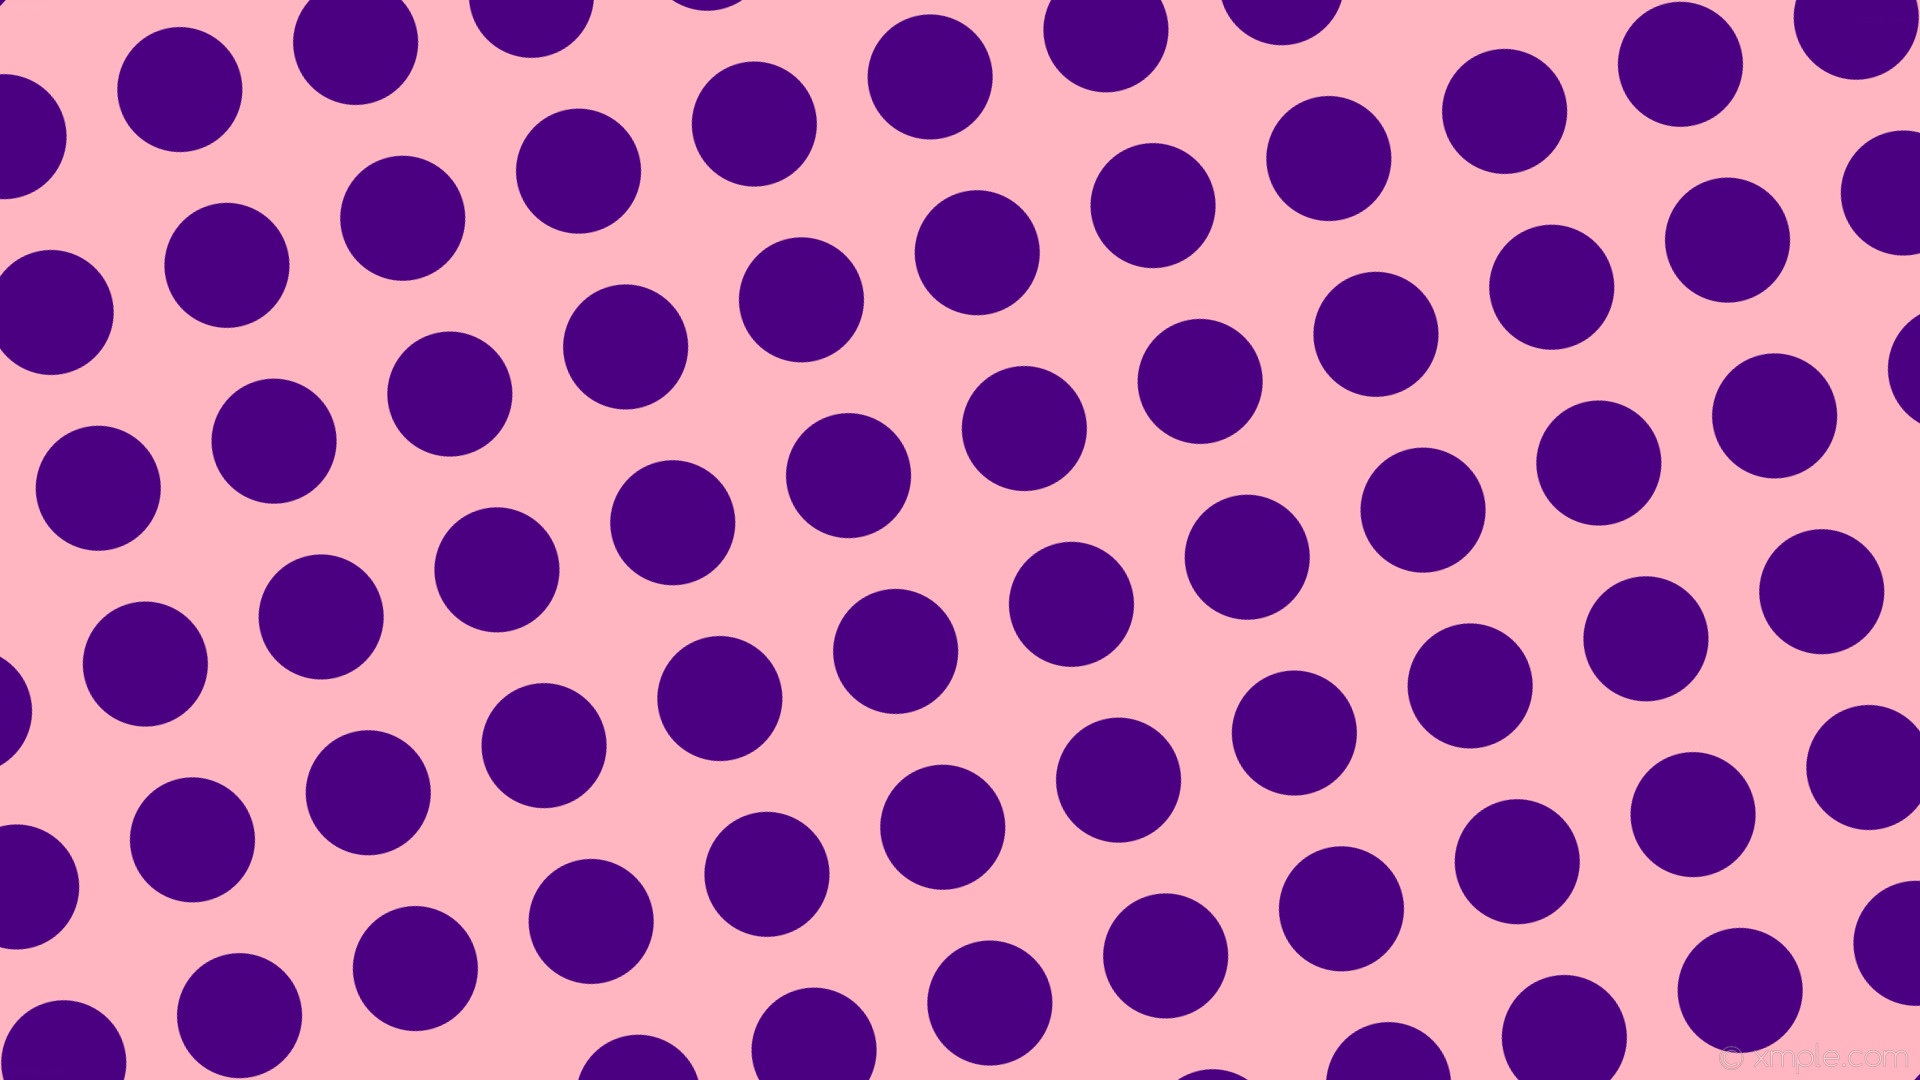 1920x1080 wallpaper pink polka dots spots purple light pink indigo #ffb6c1 #4b0082  285Â° 125px